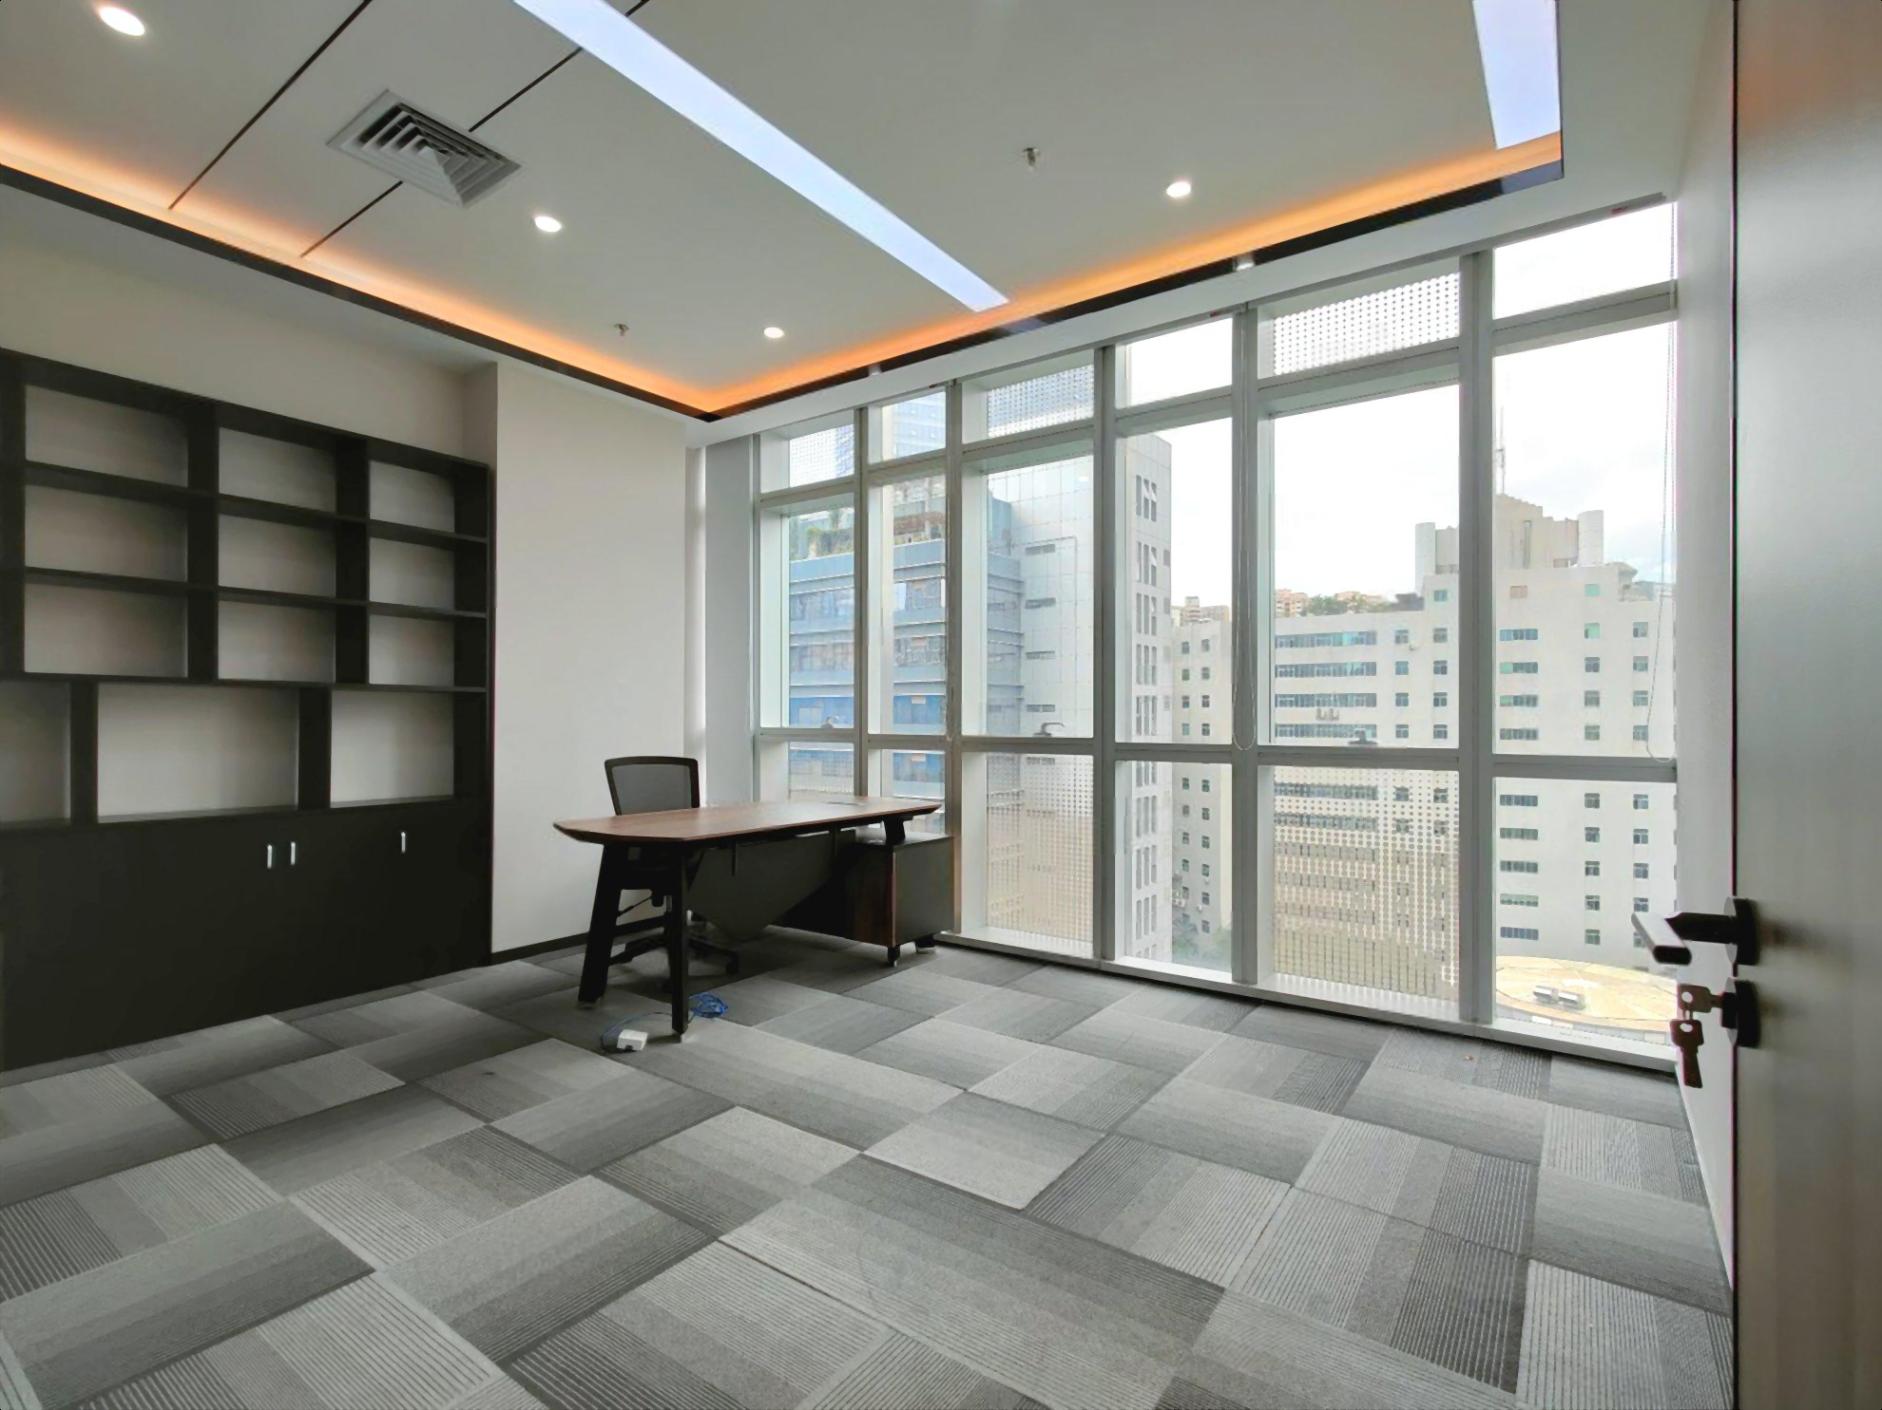 讯美科技广场写字楼办公室免租期长豪华装修258平拎包入住